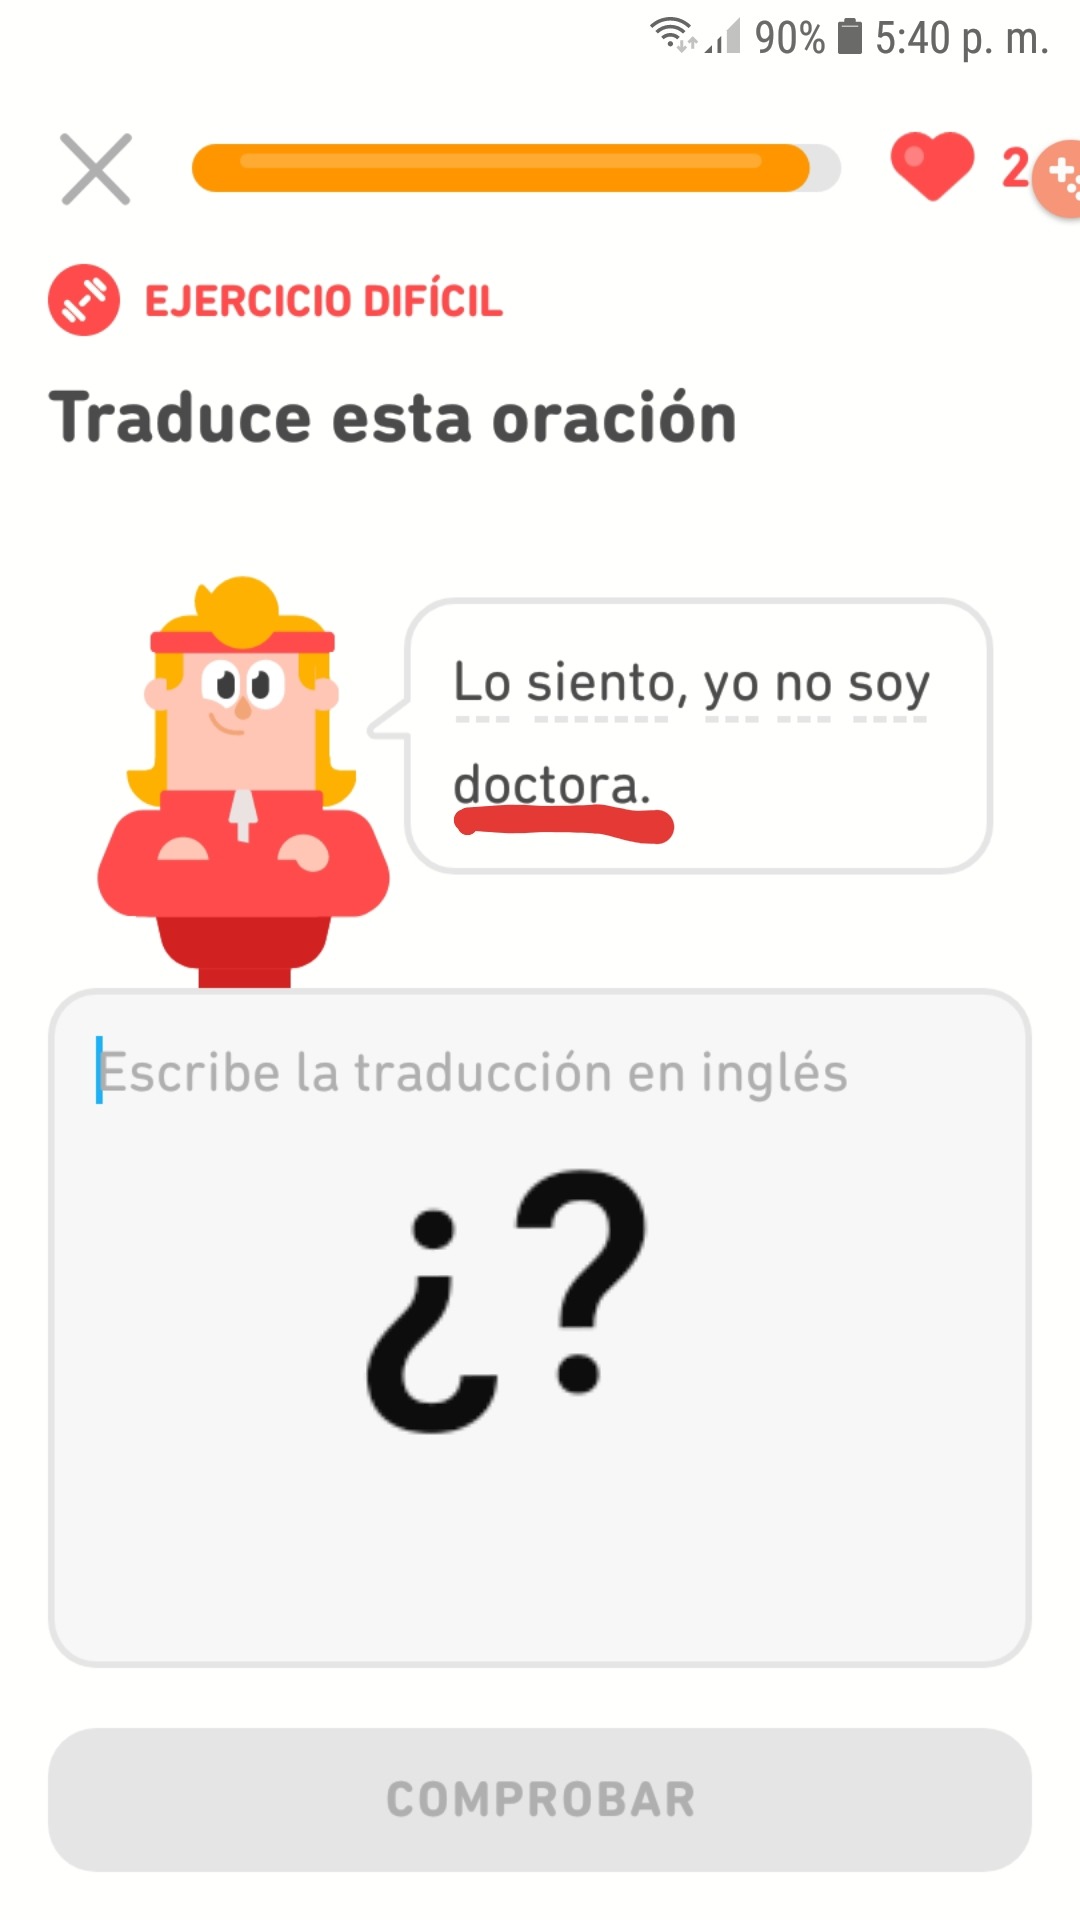 Duolingo no sabe diferenciar géneros - meme